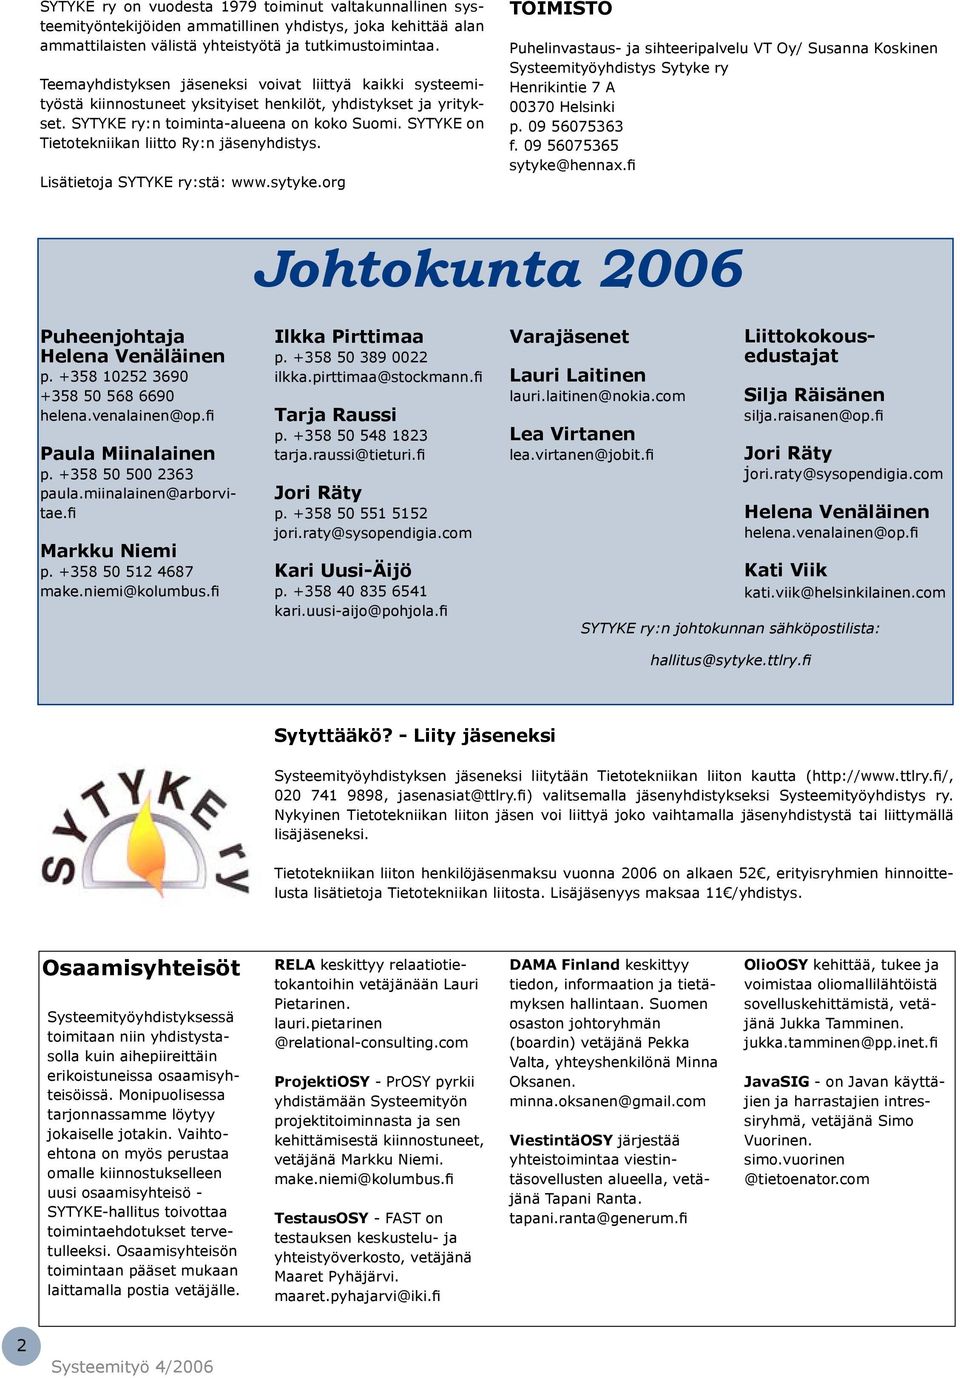 SYTYKE on Tietotekniikan liitto Ry:n jäsenyhdistys. Lisätietoja SYTYKE ry:stä: www.sytyke.